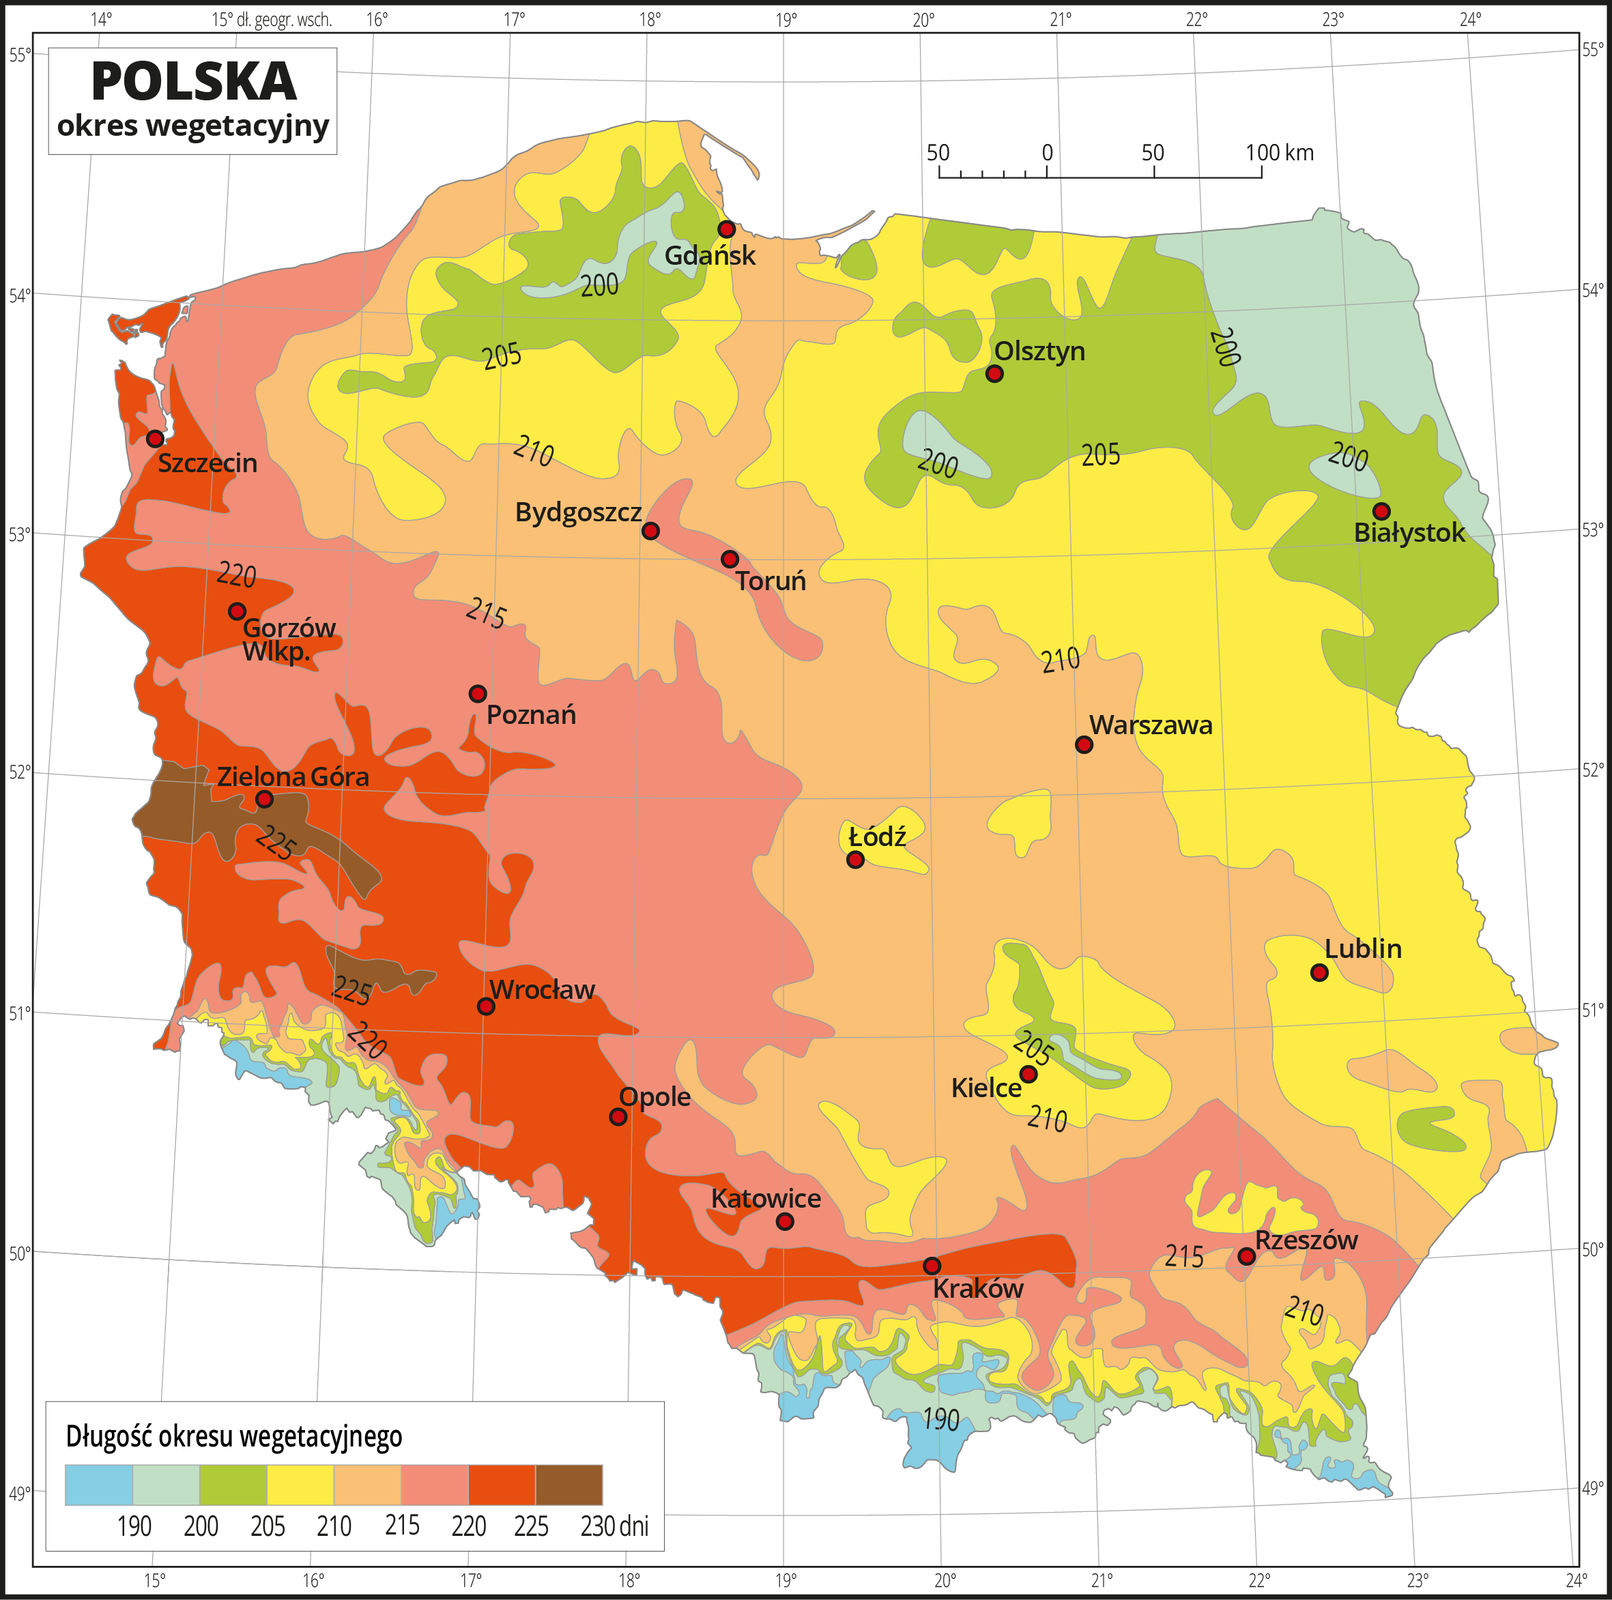 Ilustracja przedstawia mapę Polski. Na mapie kolorami zaznaczono długość okresu wegetacyjnego. Z lewej strony mapy jest kolor brązowy, przechodzący w kierunku wschodnim w czerwony, potem żółty, zielony do zielono-niebieskiego. Najwięcej obszarów w kolorze zielonym i zielono-niebieskim występuje na północnym-wschodzie i na południu. W południowej części mapy, obejmującym góry występuje również kolor niebieski. Na izoliniach opisano długość okresu wegetacyjnego od stu dziewięćdziesięciu dni – kolor niebieski do dwustu trzydziestu dni – kolor brązowy. Czerwonymi punktami zaznaczono miasta wojewódzkie. Mapa pokryta jest siatką równoleżników i południków. Dookoła mapy jest biała ramka, w której opisane są współrzędne geograficzne. Poniżej mapy w legendzie umieszczono prostokątny poziomy pasek. Pasek podzielono na osiem kolorów. Z lewej strony niebieski, niebiesko-zielony, dalej zielony przez żółty, pomarańczowy i czerwony do brązowego. Na izoliniach opisano długość okresu wegetacyjnego od stu dziewięćdziesięciu dni – kolor niebieski do dwustu trzydziestu dni – kolor brązowy. Opisano izolinie sto dziewięćdziesiąt dni, dwieście, dwieście pięć, dwieście dziesięć, dwieście piętnaście, dwieście dwadzieścia, dwieście dwadzieścia pięć, dwieście trzydzieści dni.